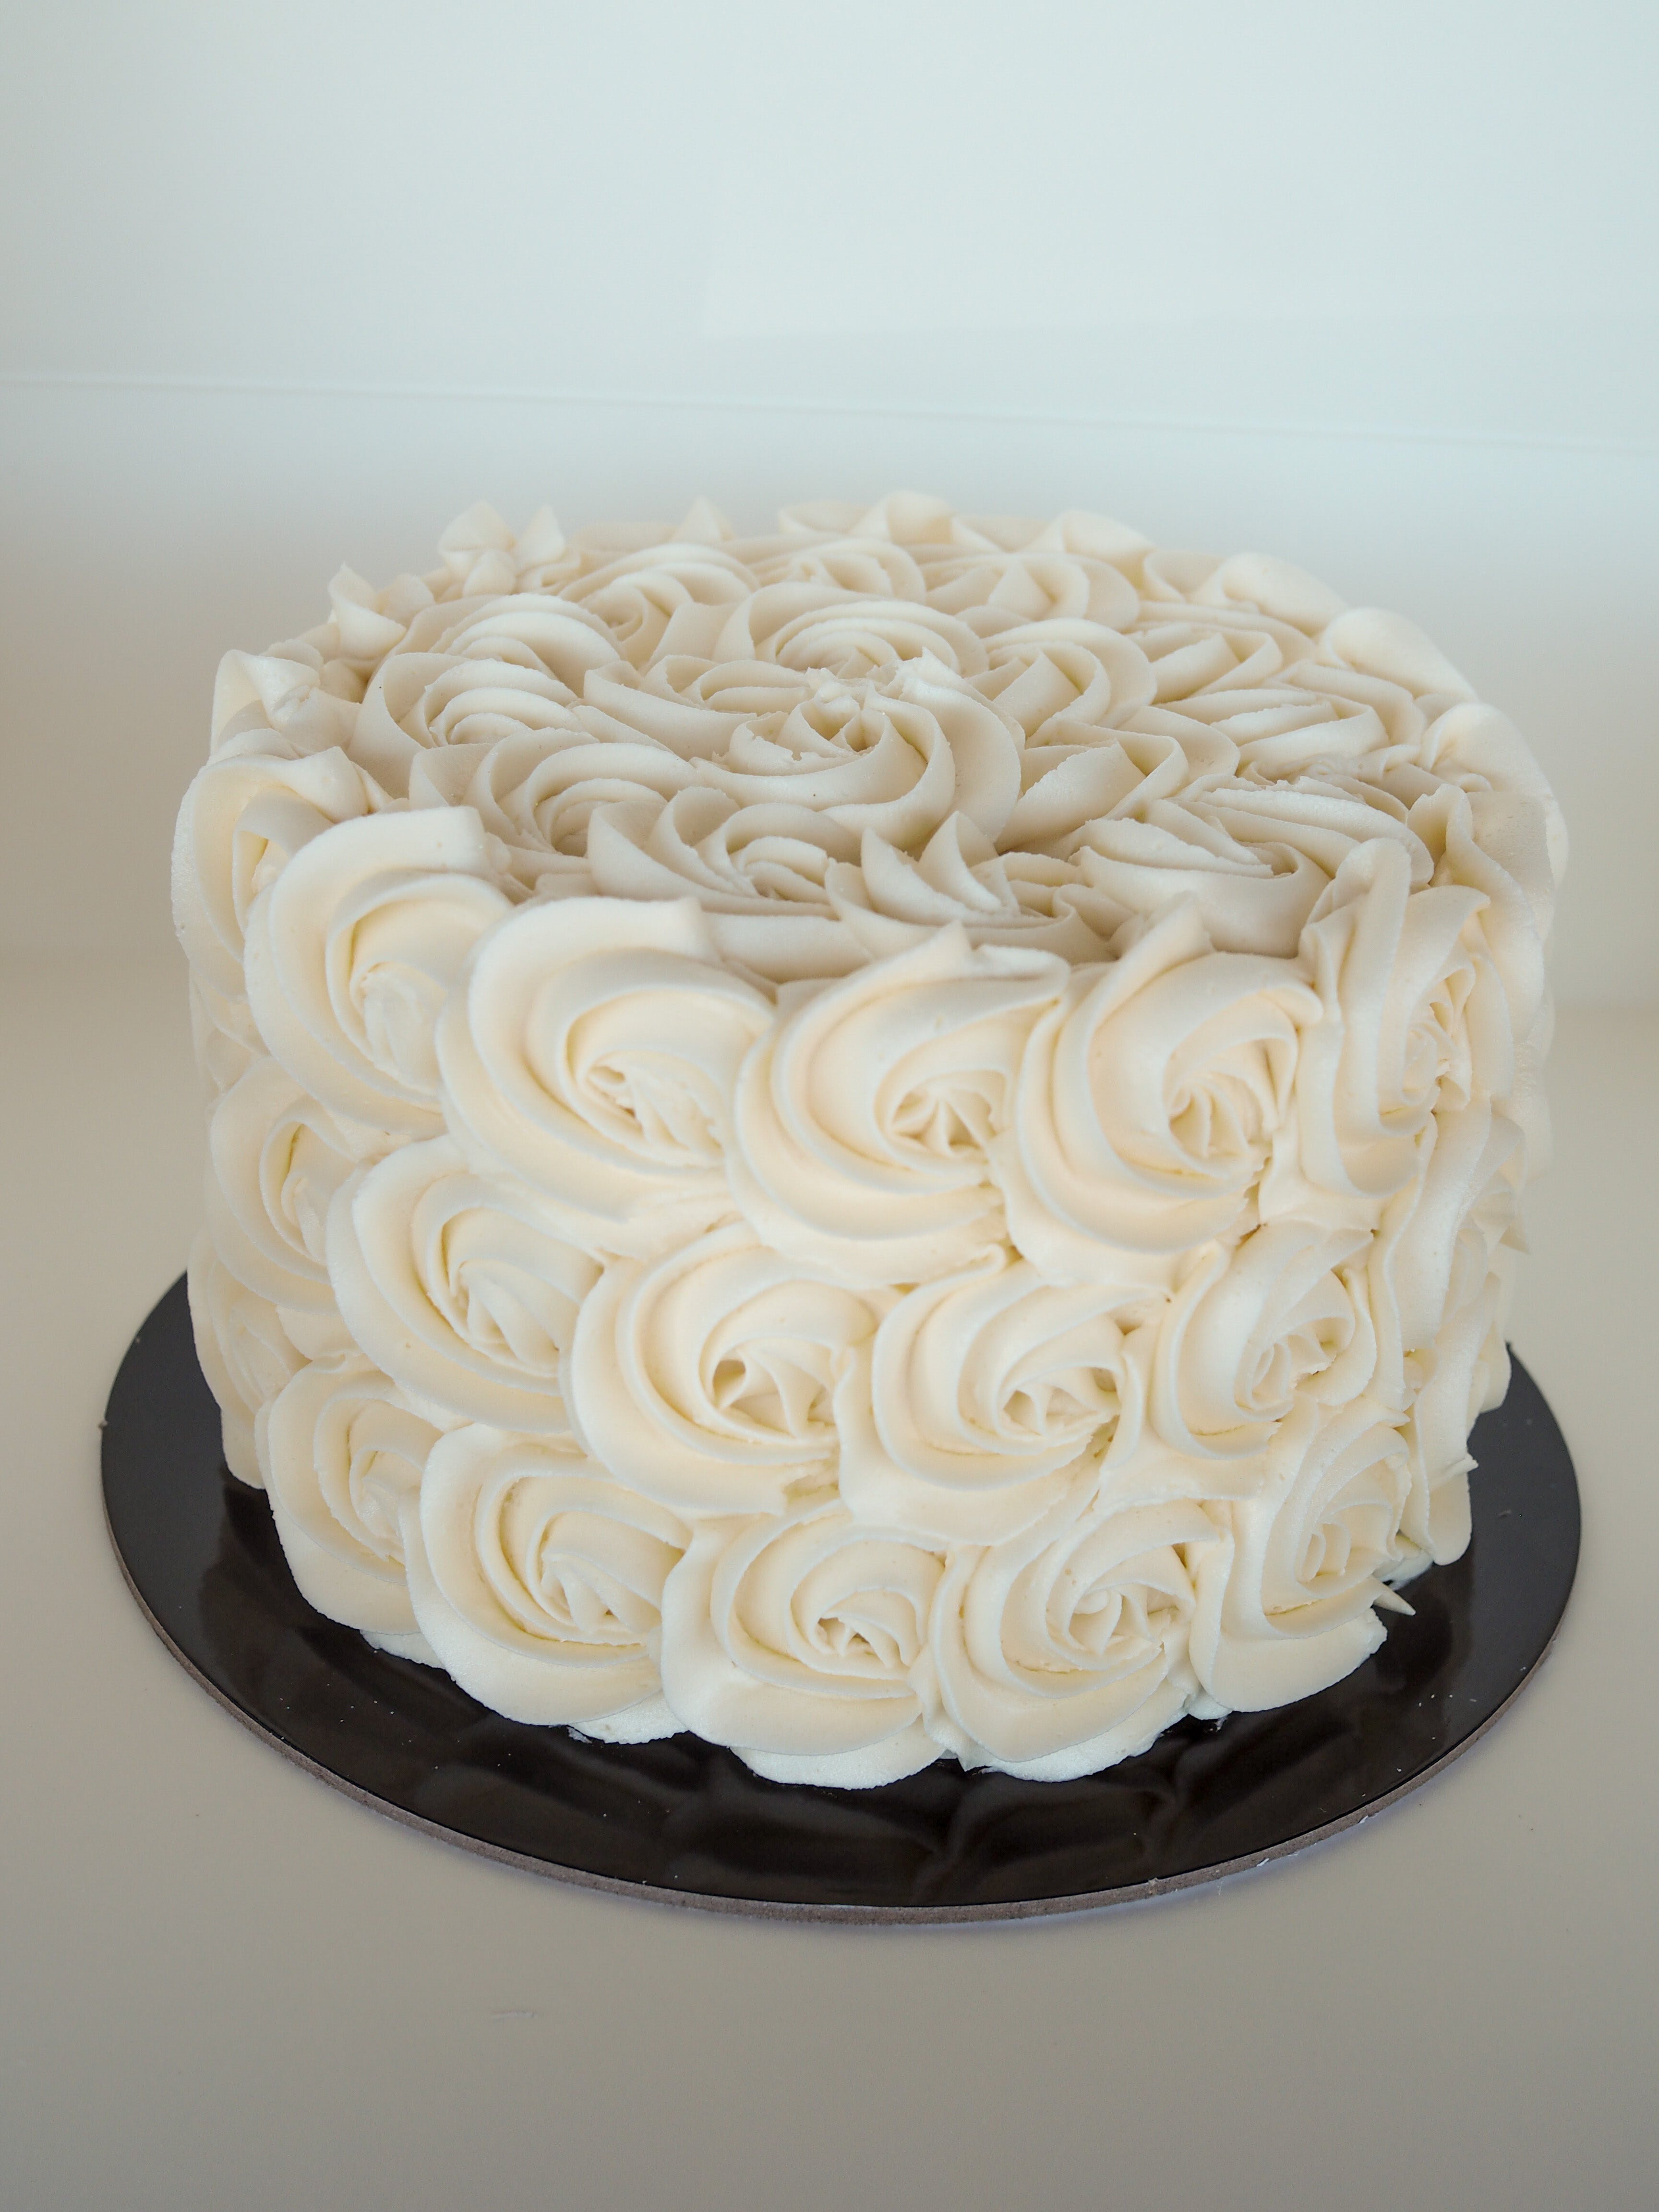 🤍white rosette cake filled with dulce de leche🤍 #p... | TikTok